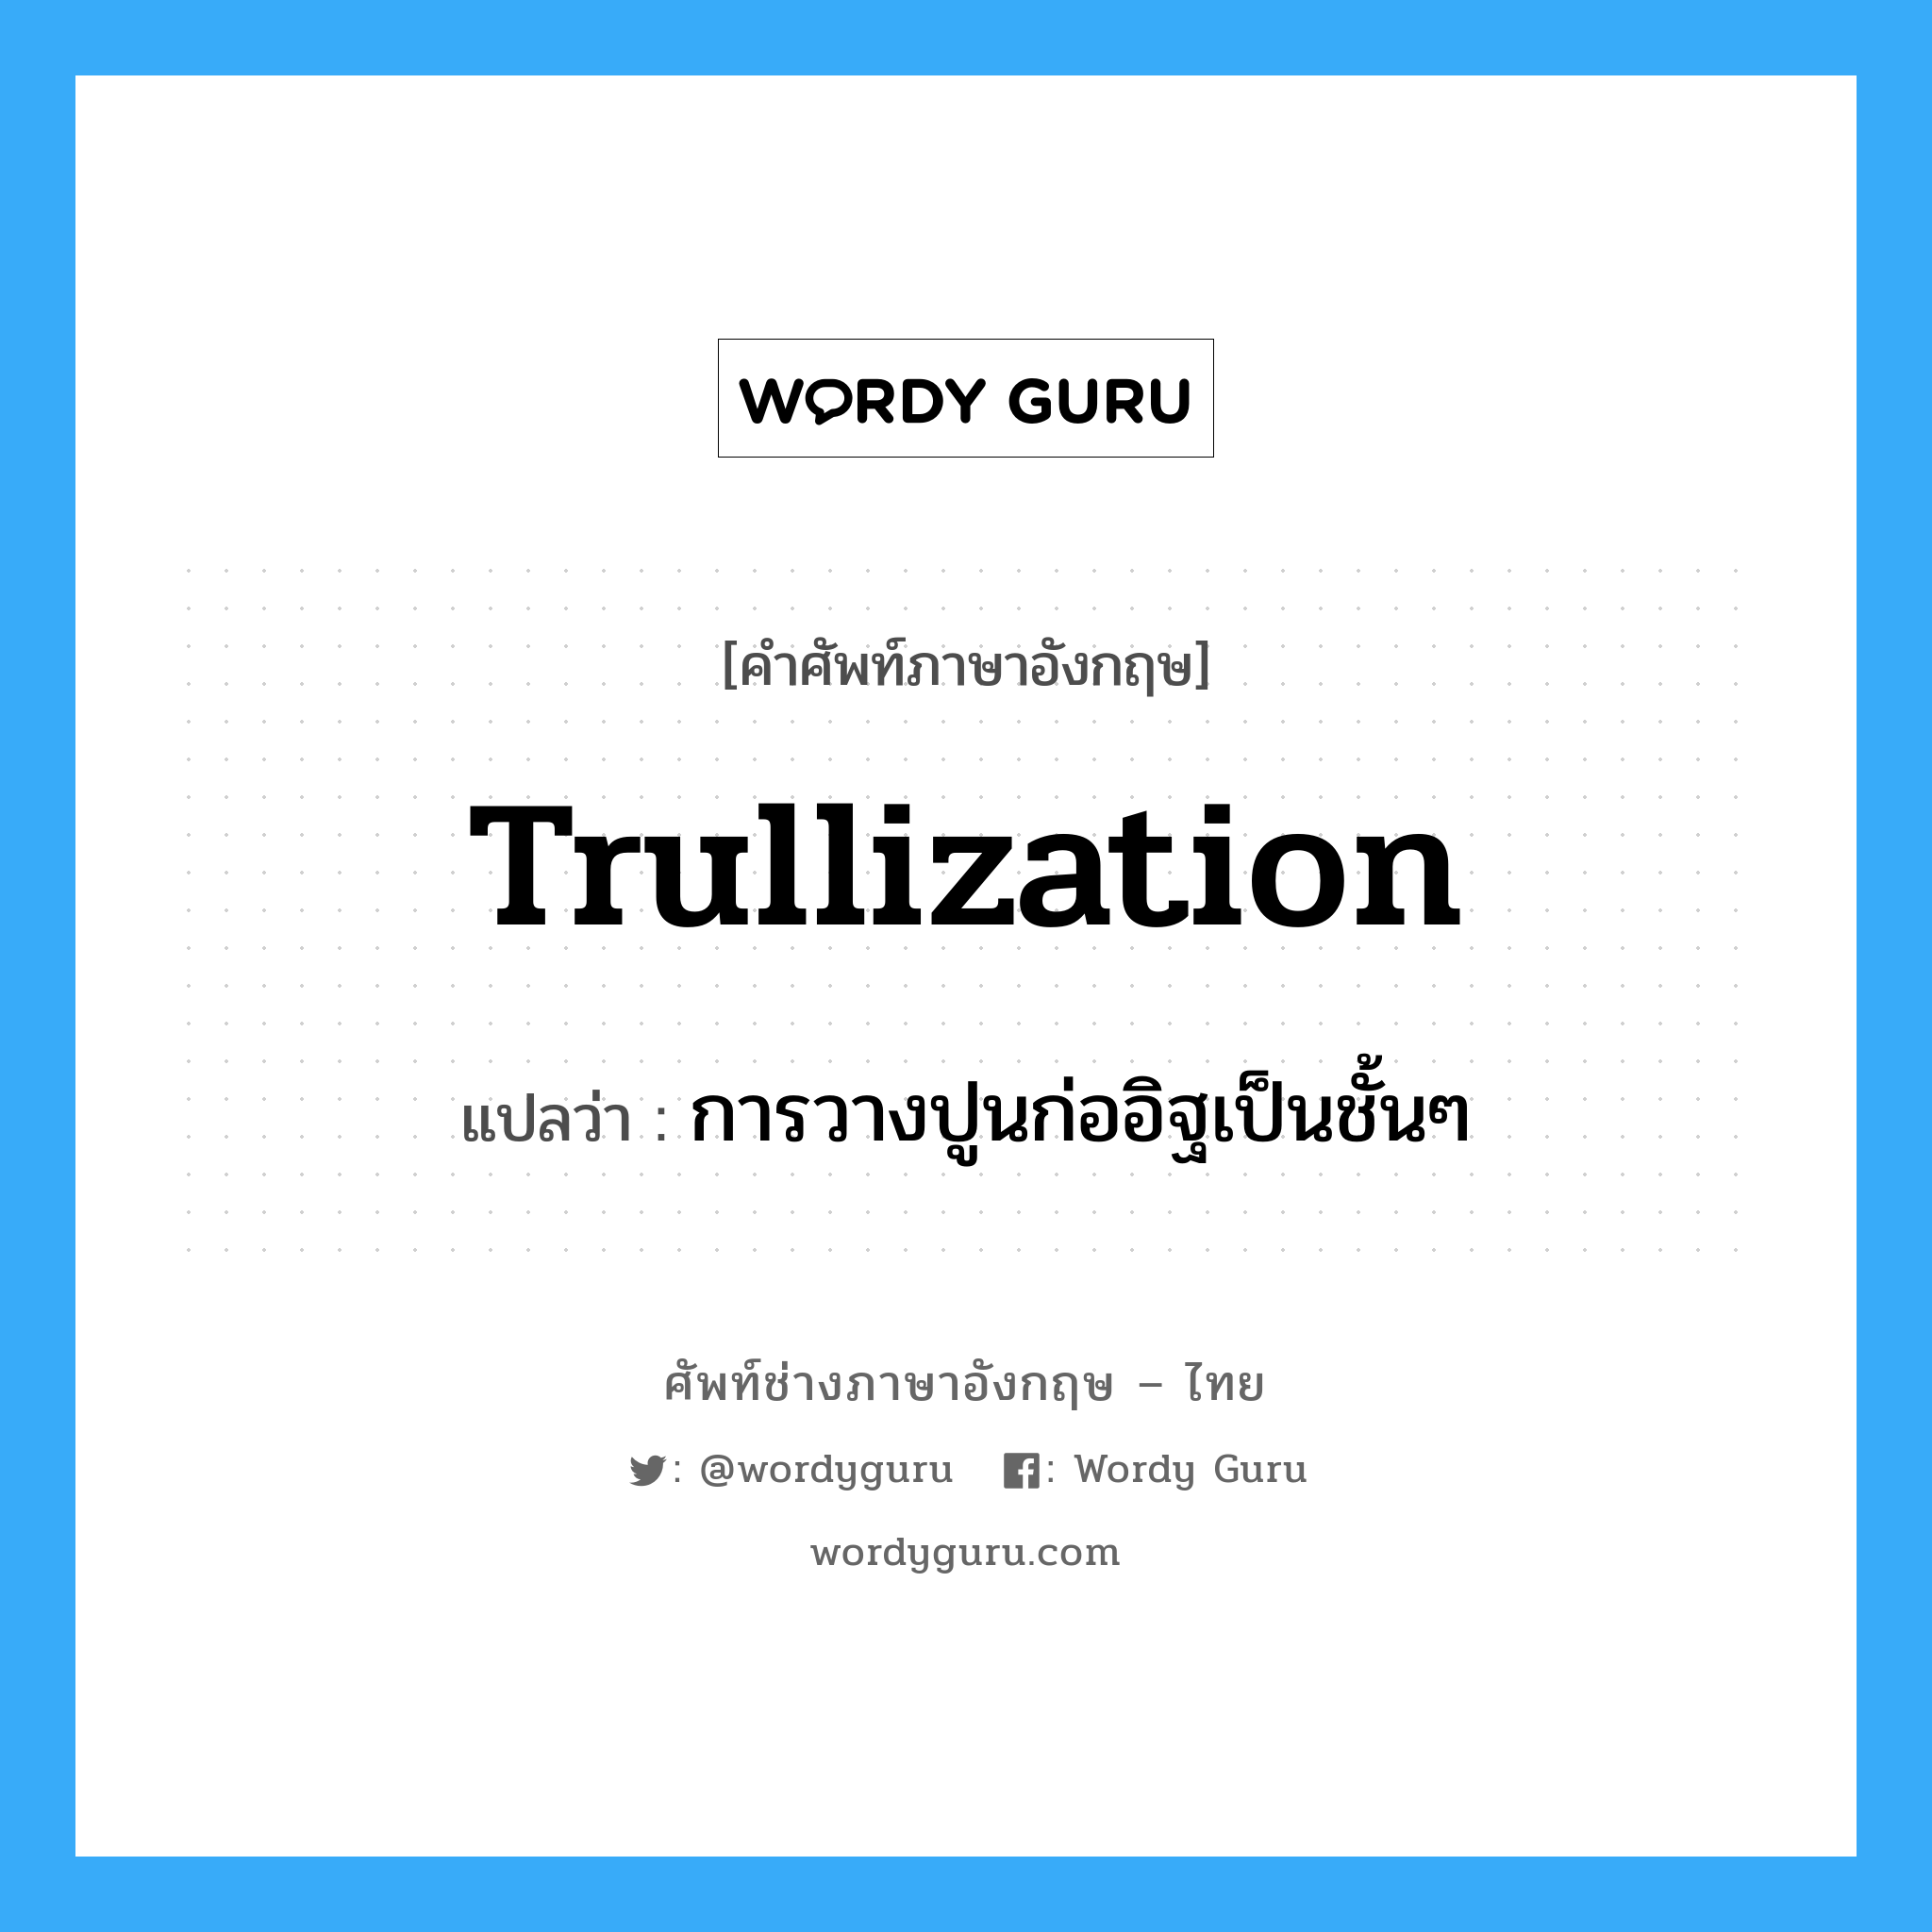 trullization แปลว่า?, คำศัพท์ช่างภาษาอังกฤษ - ไทย trullization คำศัพท์ภาษาอังกฤษ trullization แปลว่า การวางปูนก่ออิฐเป็นชั้นๆ